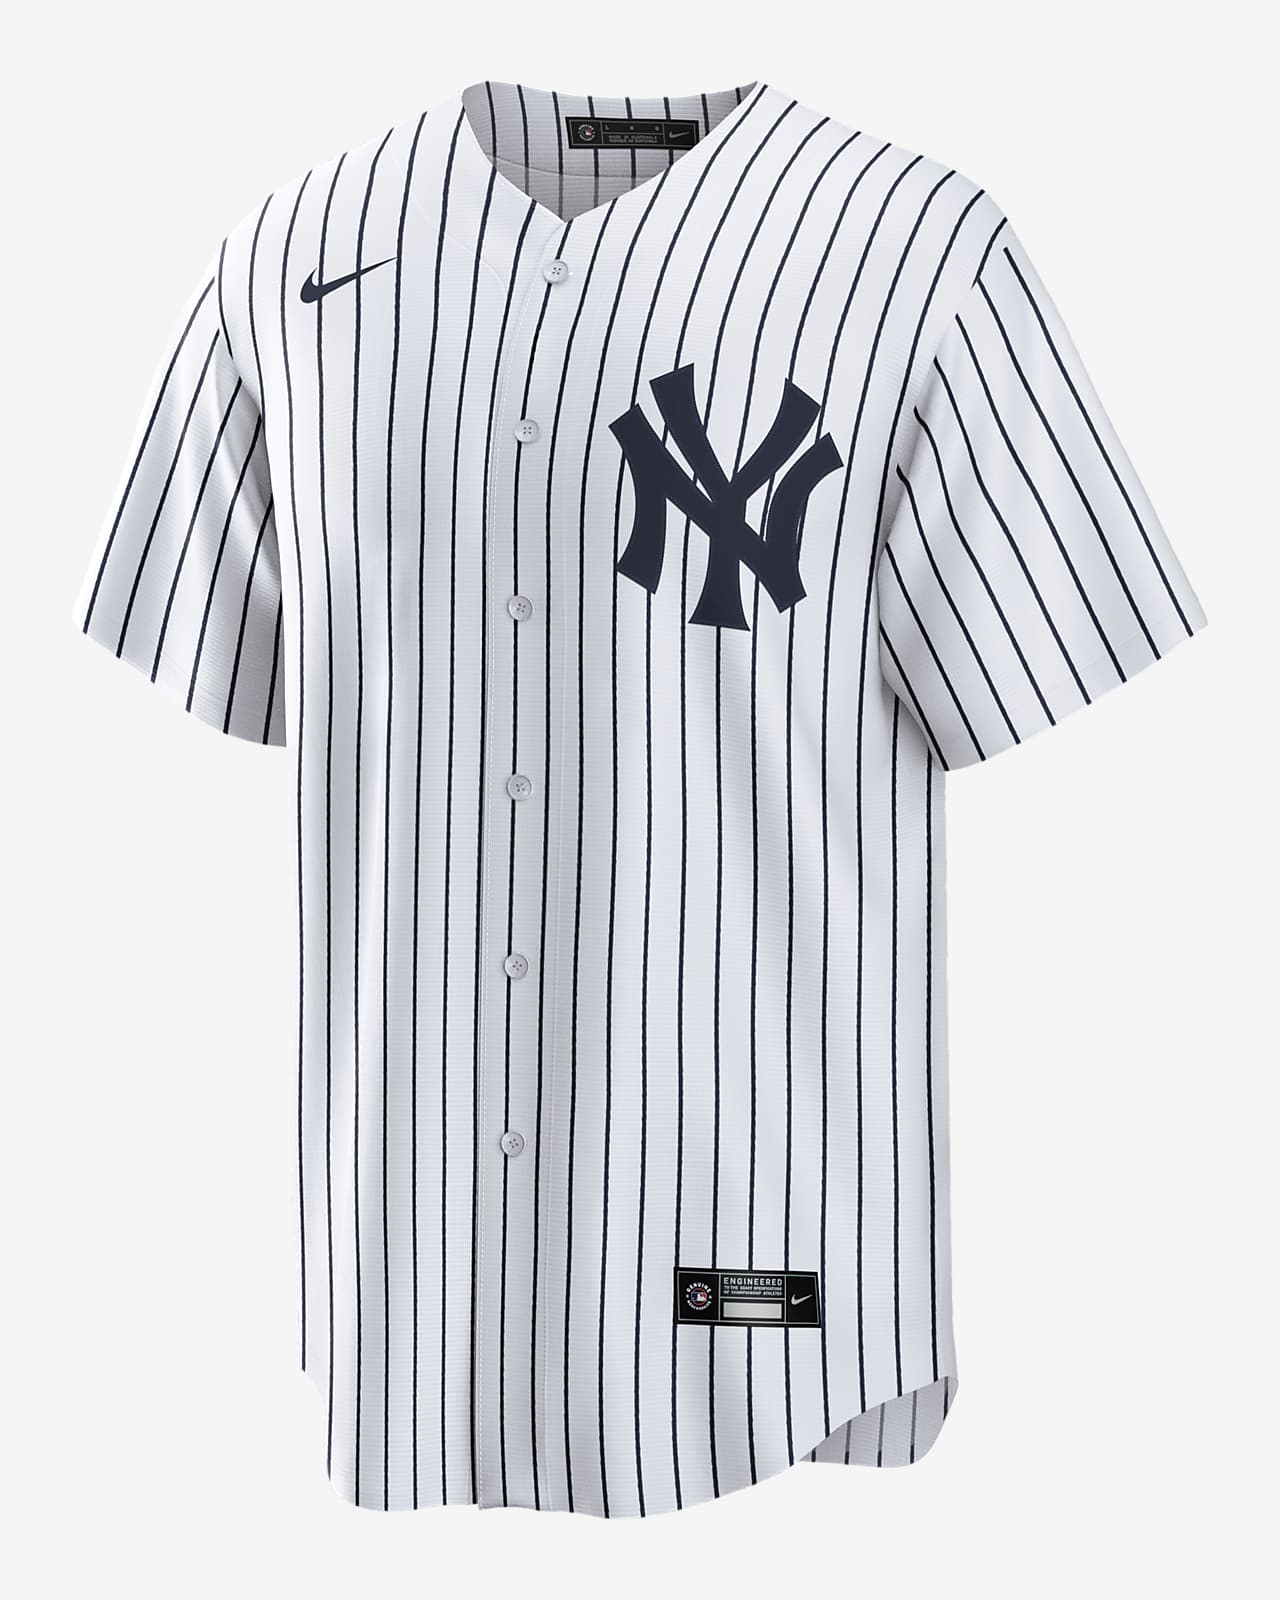 Juan Soto New York Yankees Men's Nike MLB Replica Jersey